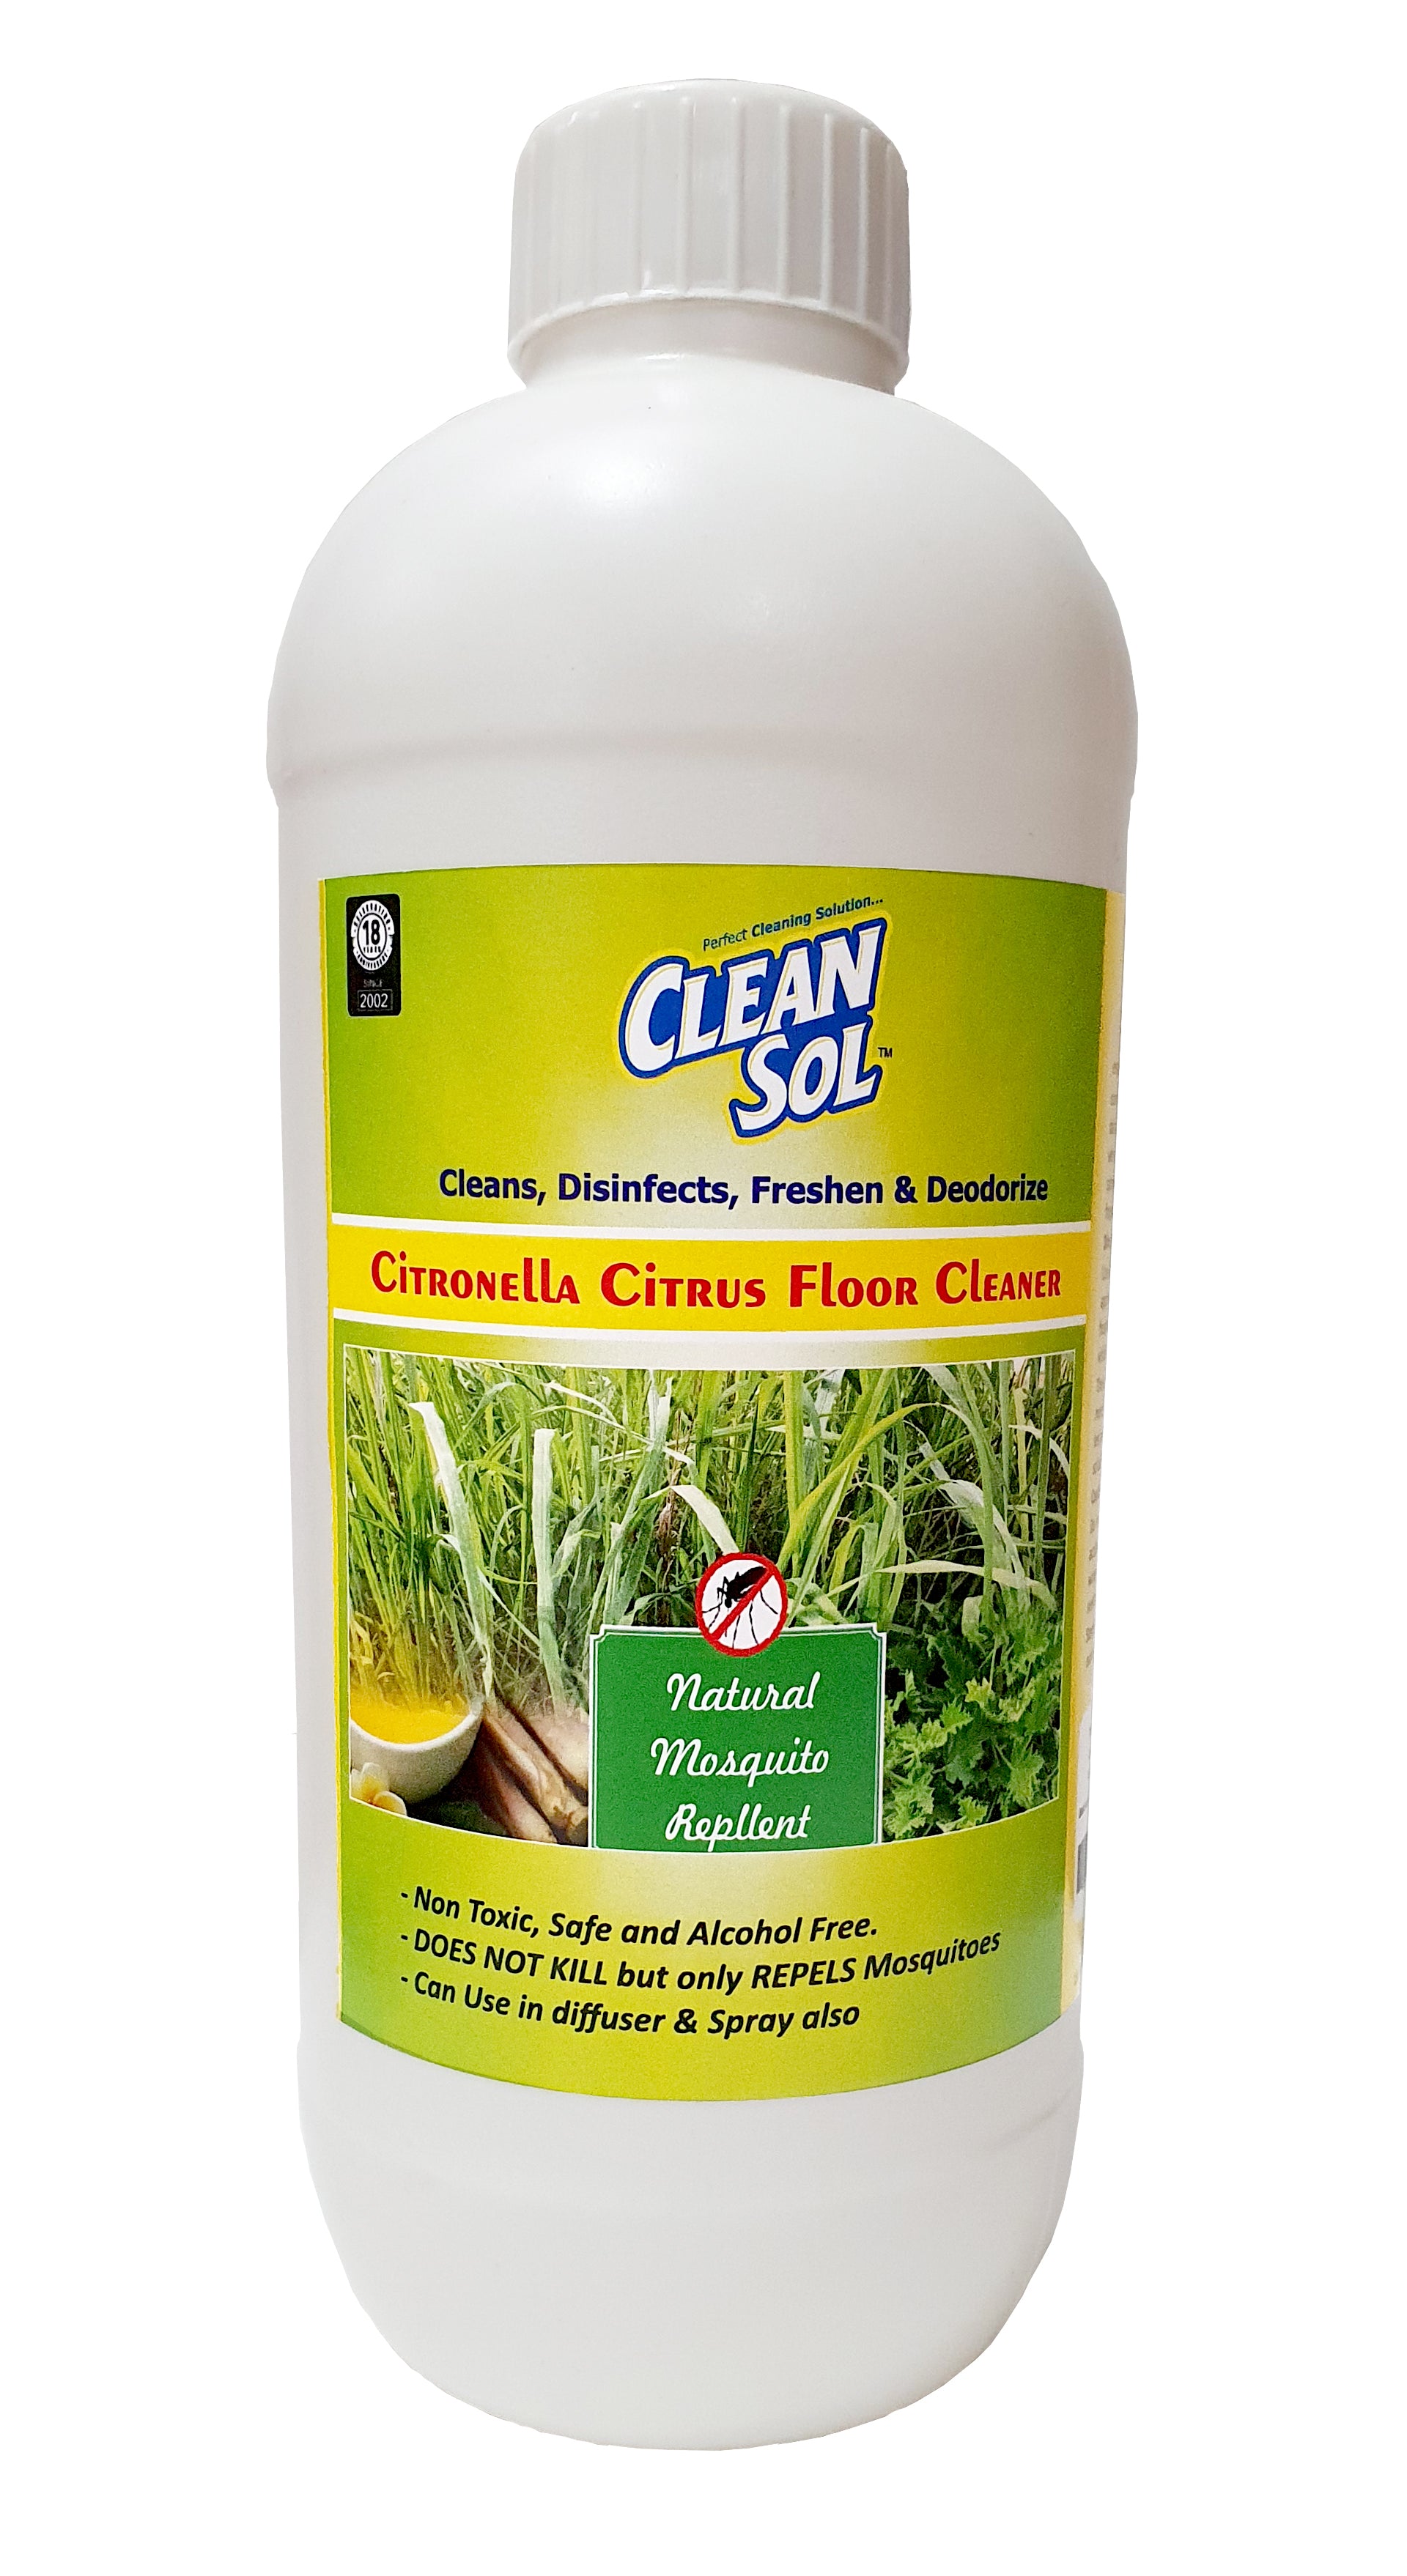 Cleansol Citronella Citrus Floor Cleaner